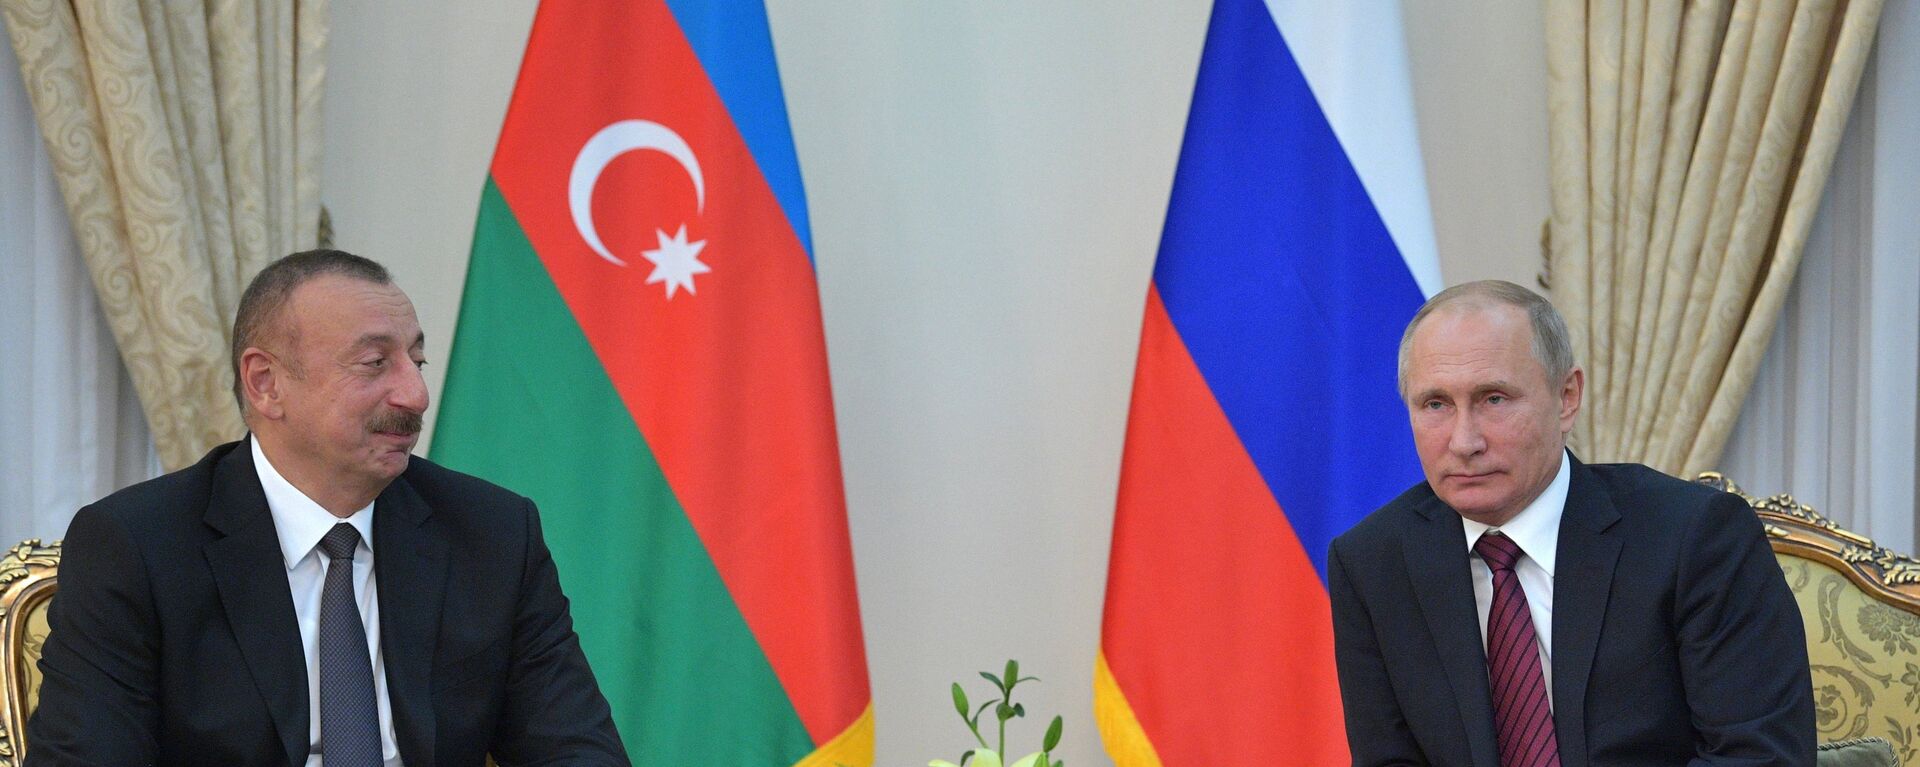 Azerbaycan Cumhurbaşkanı İlham Aliyev ve Rusya Devlet Başkanı Vladimir Putin - Sputnik Türkiye, 1920, 24.09.2021